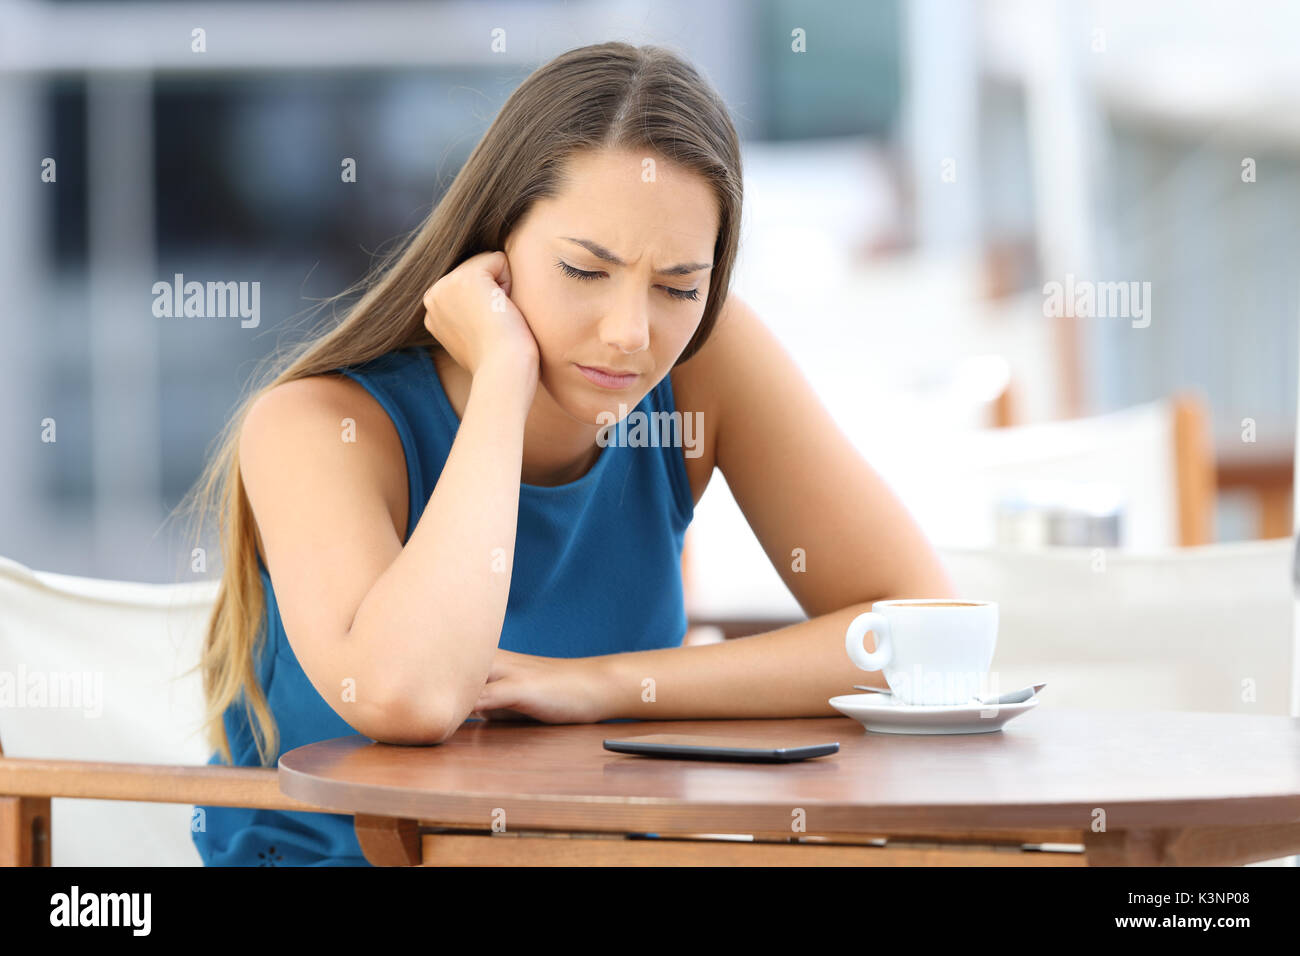 Única mujer triste esperando un mensaje de teléfono móvil o llame a sentarse en una cafetería Foto de stock